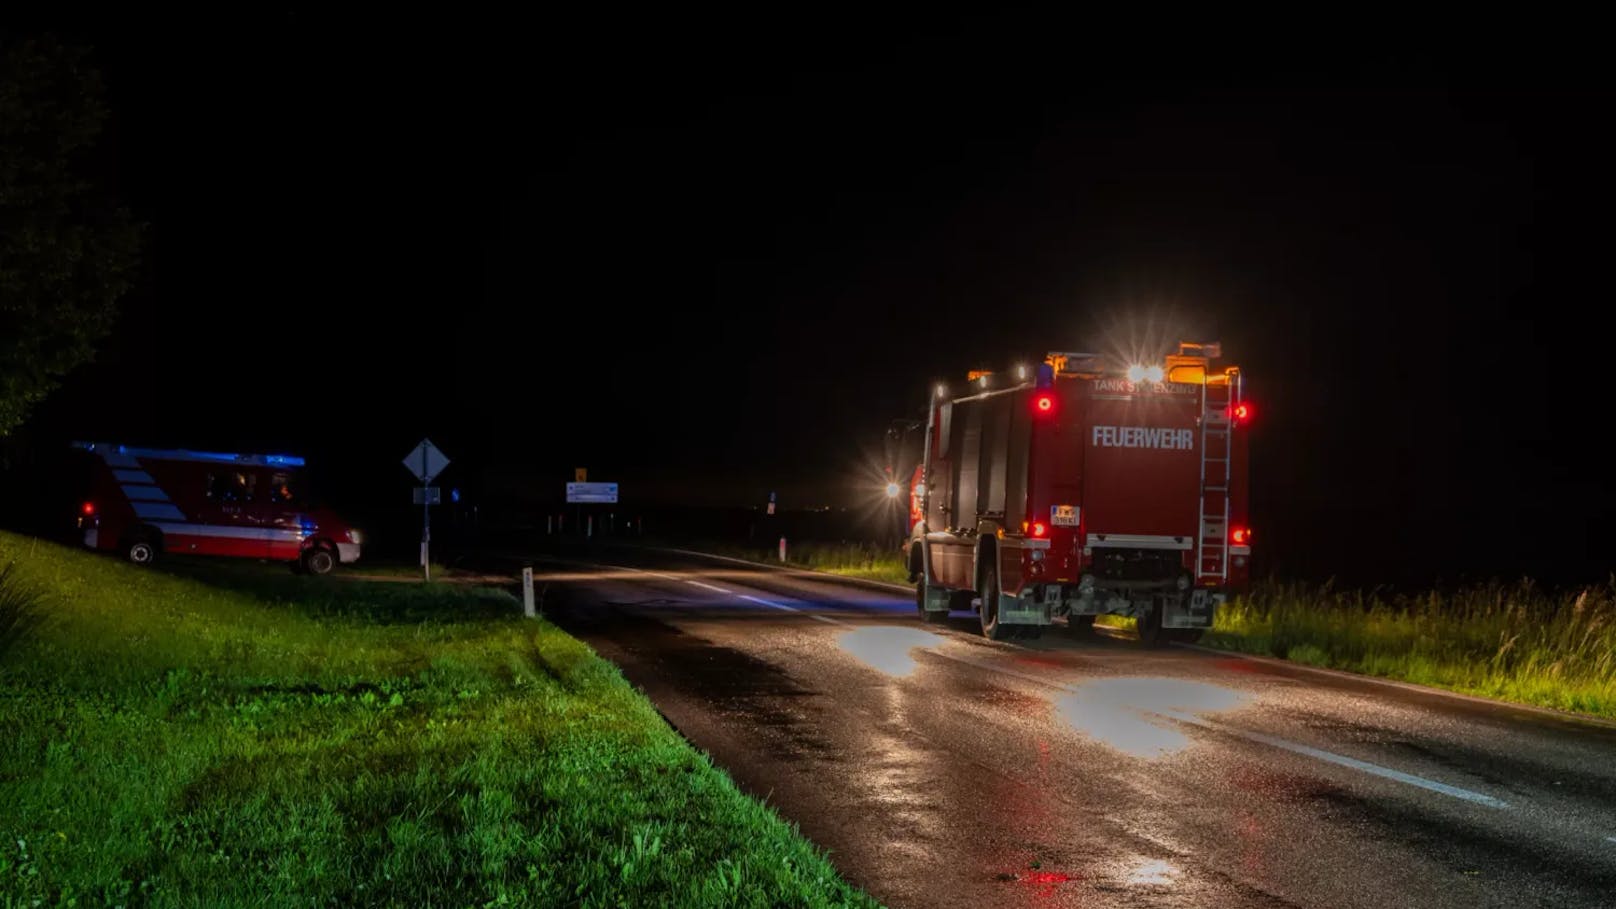 Rotes Kreuz, Polizei und die Feuerwehr Strienzing wurden gegen 00:17 Uhr zu Aufräumarbeiten nach einem Verkehrsunfall alarmiert.